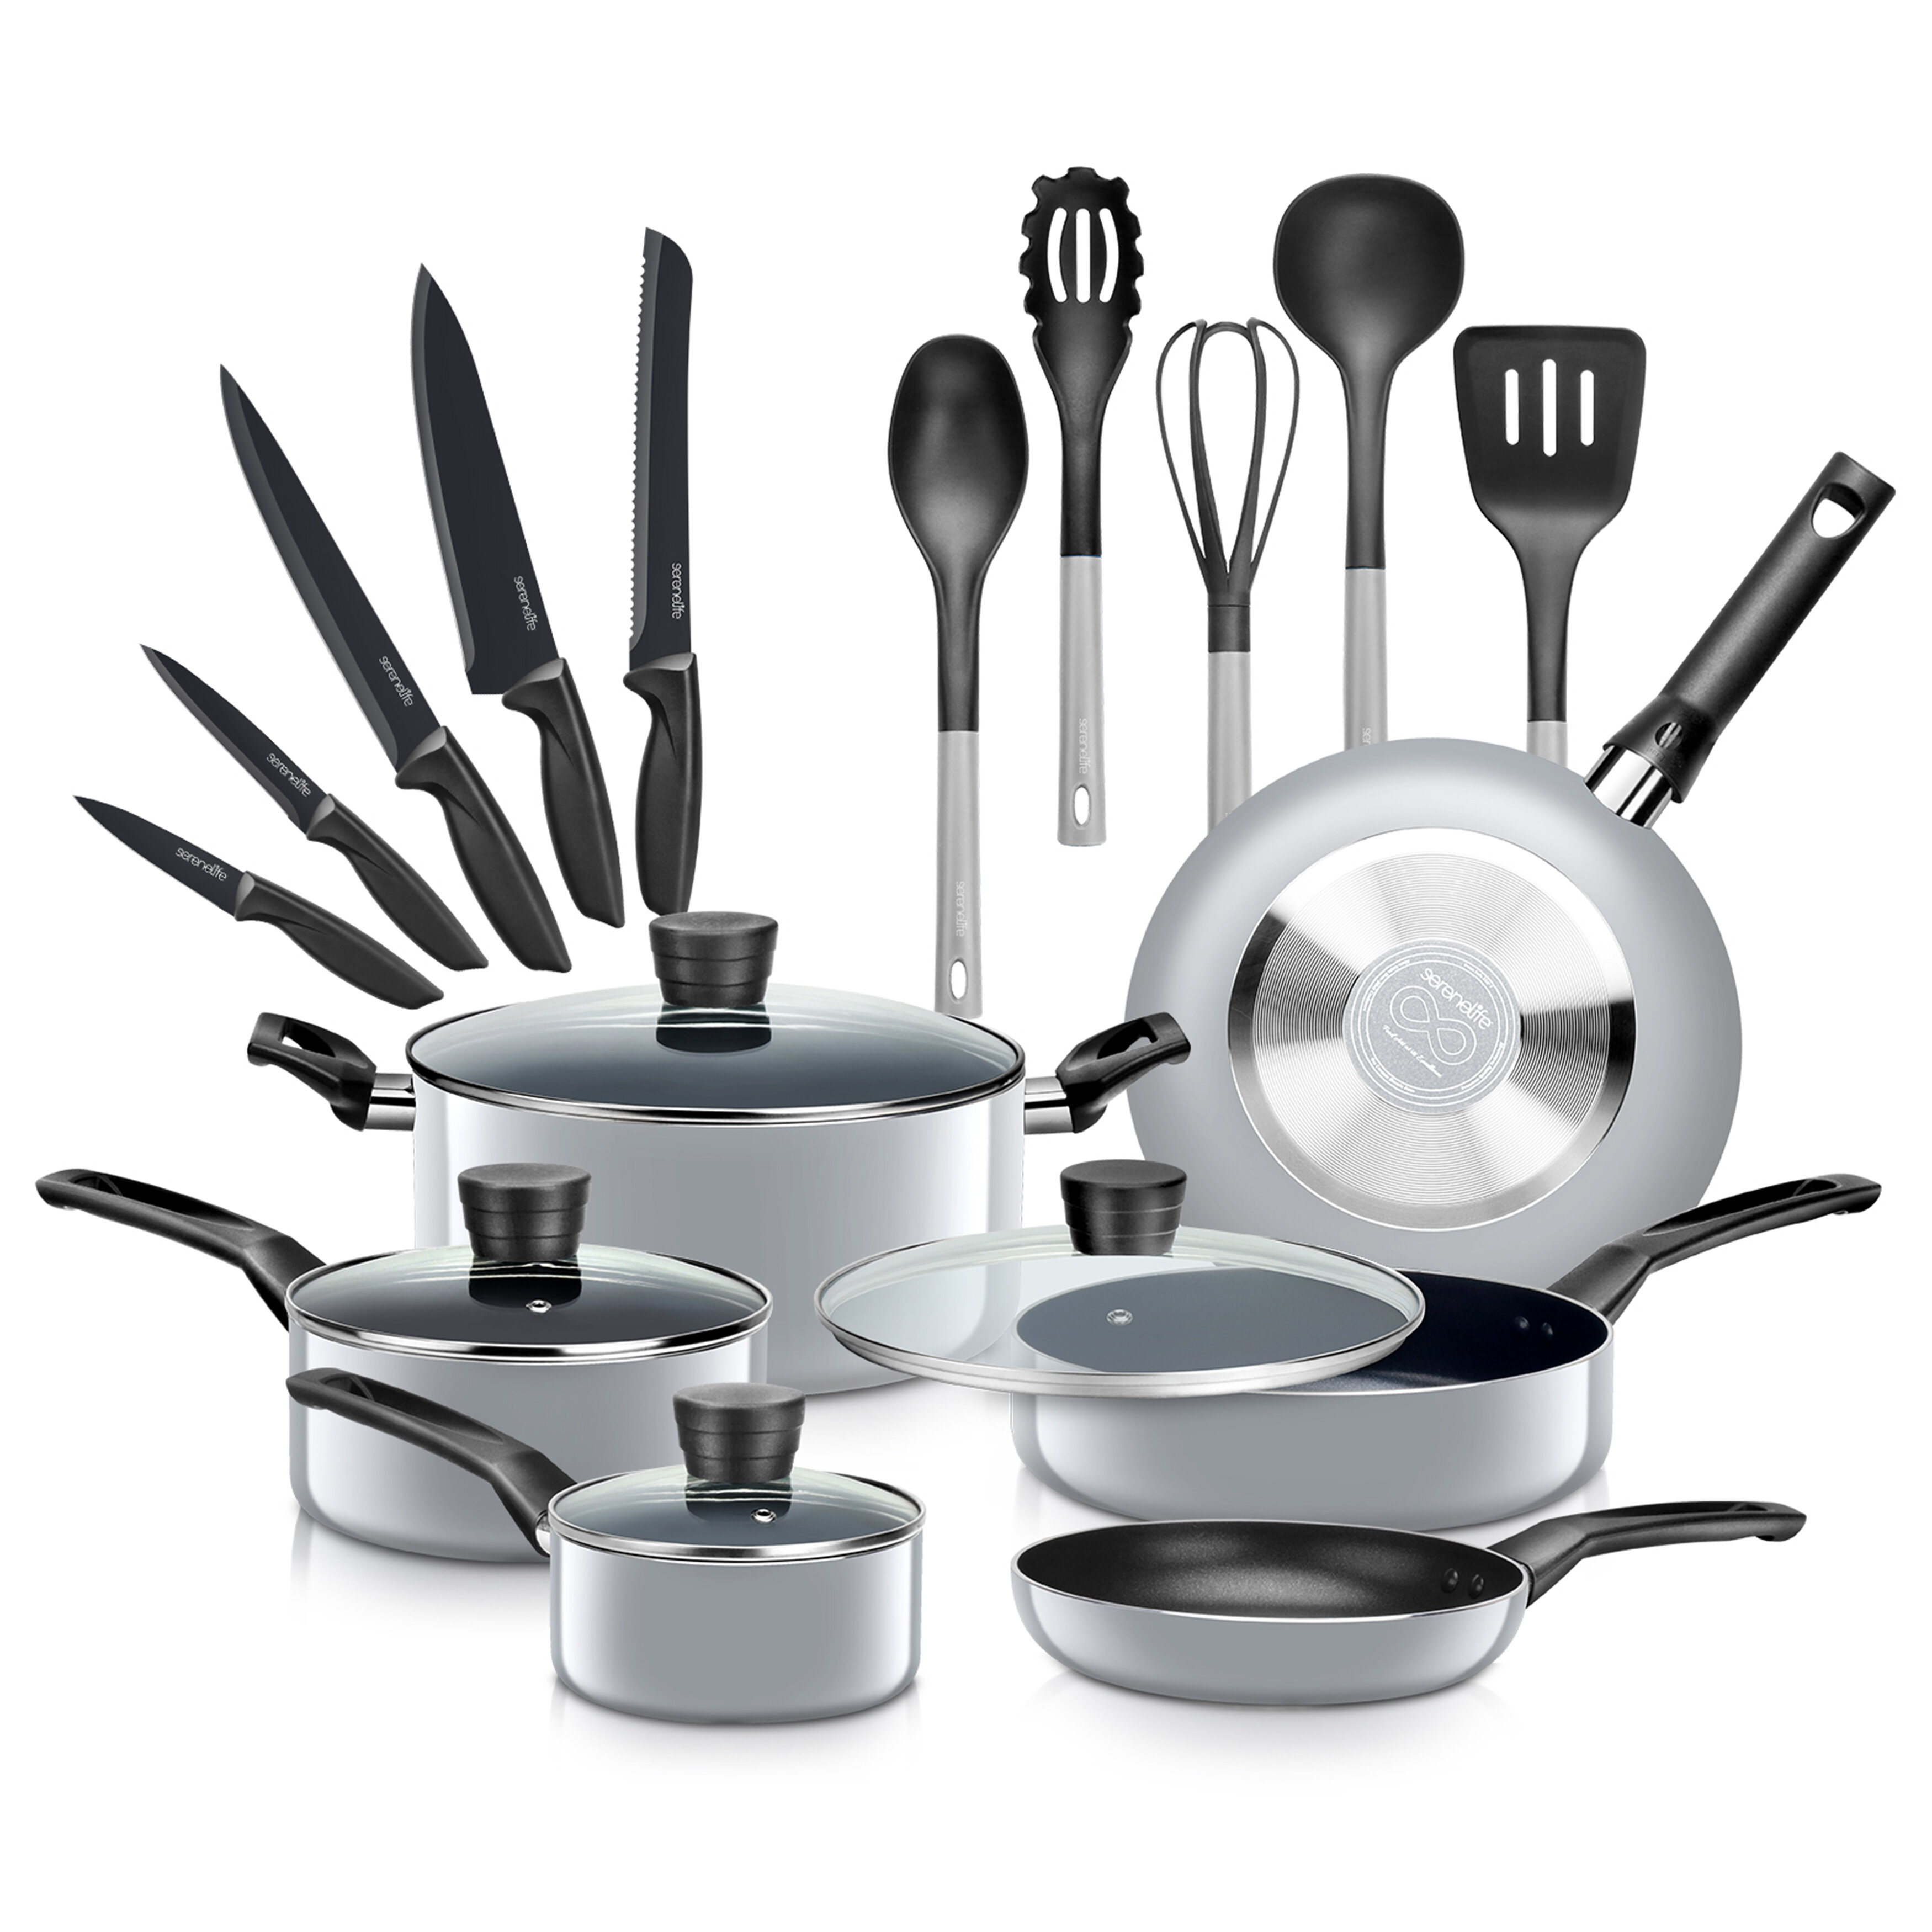 https://assets.wfcdn.com/im/72752940/compr-r85/1889/188930661/20-piece-non-stick-aluminum-cookware-set.jpg